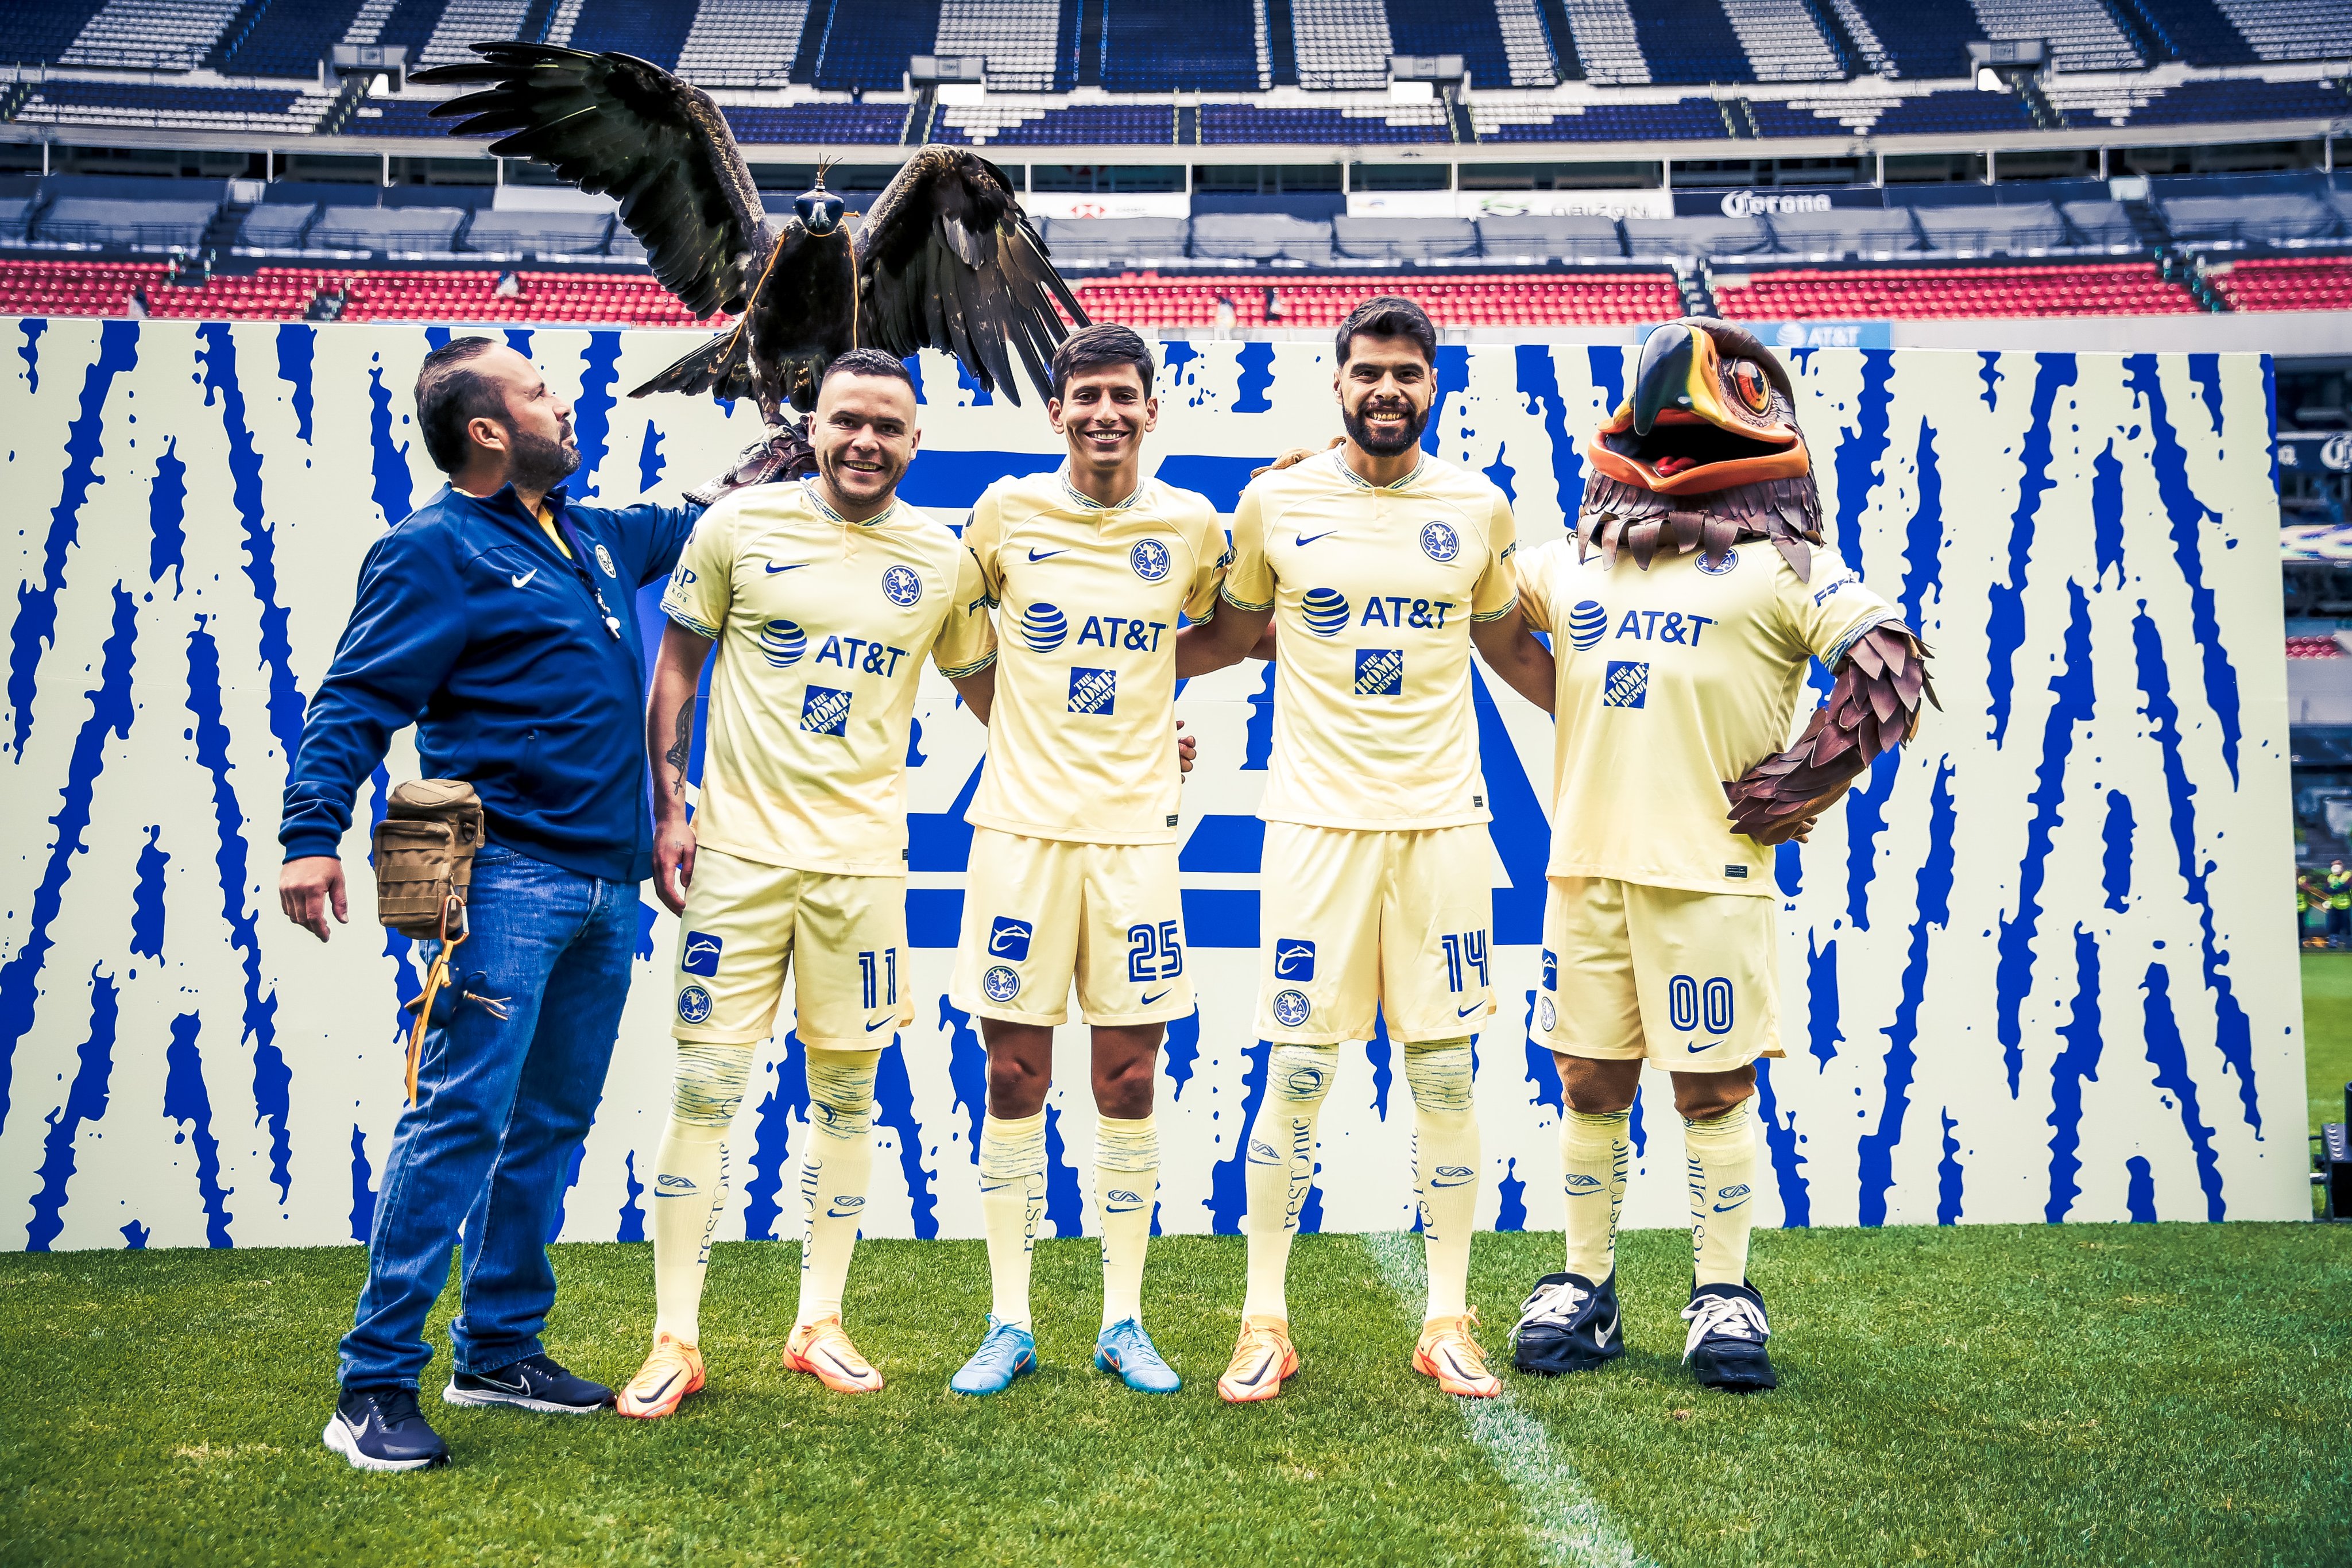 Presentación de refuerzos del Club América para el Apertura 2022: Jonathan Rodríguez, Néstor Araújo y Jurgen Damm (Foto: Club América)